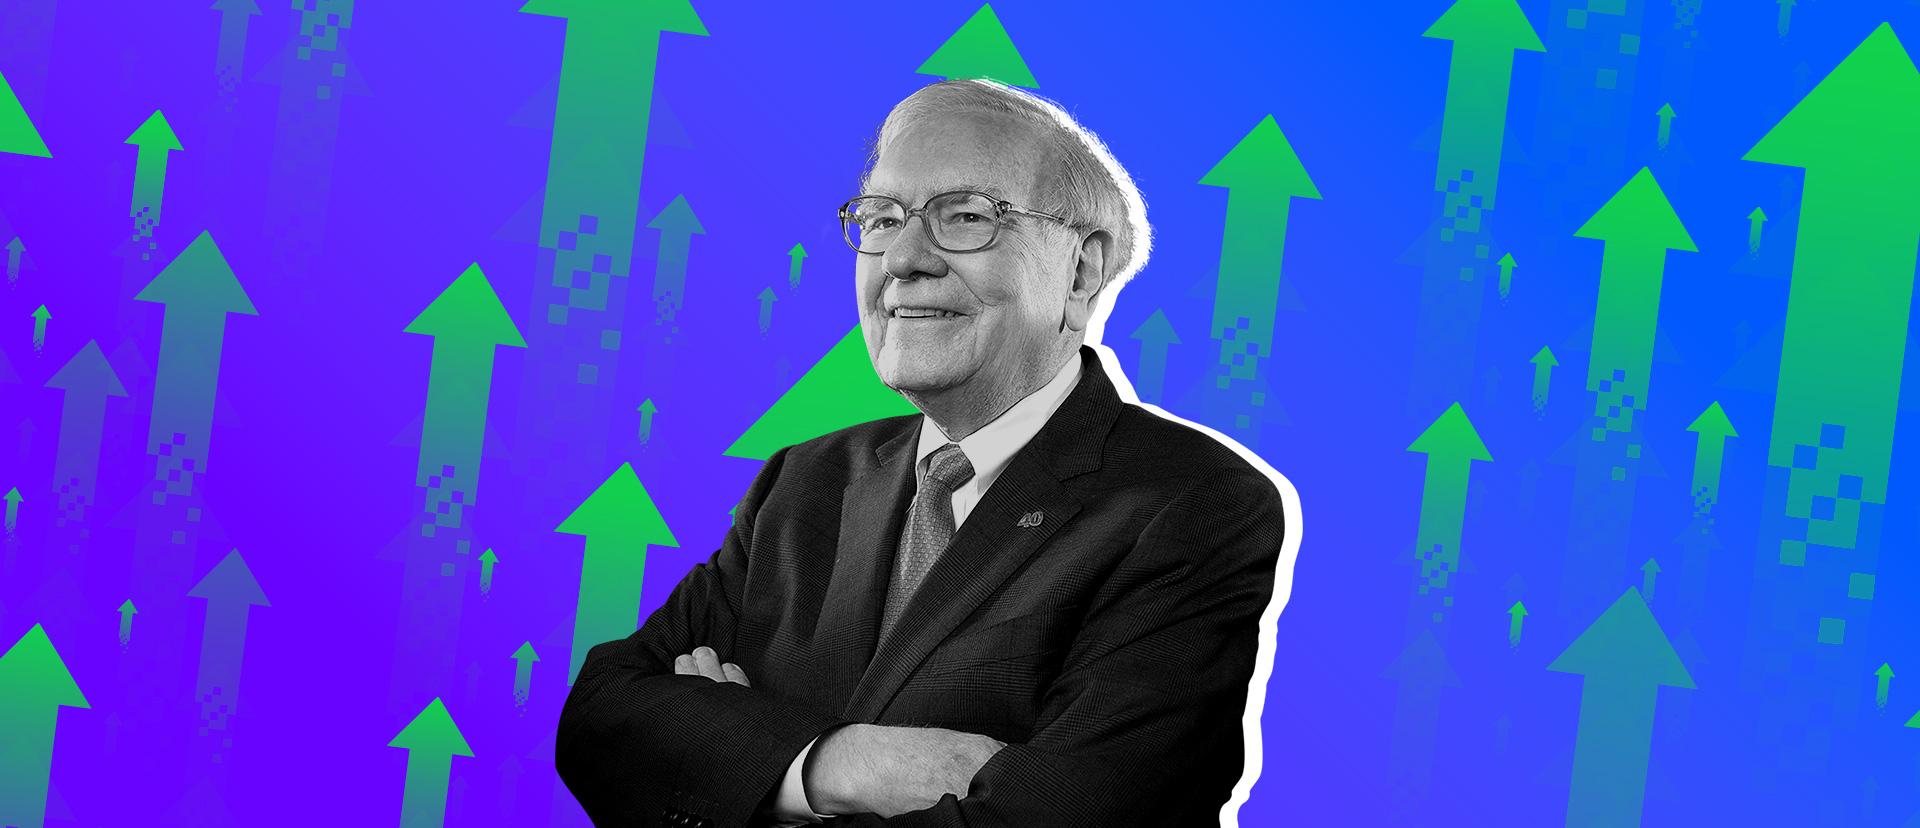 บริษัทใดที่ Warren Buffet มองว่าควรค่าแก่การเอาใจใส่